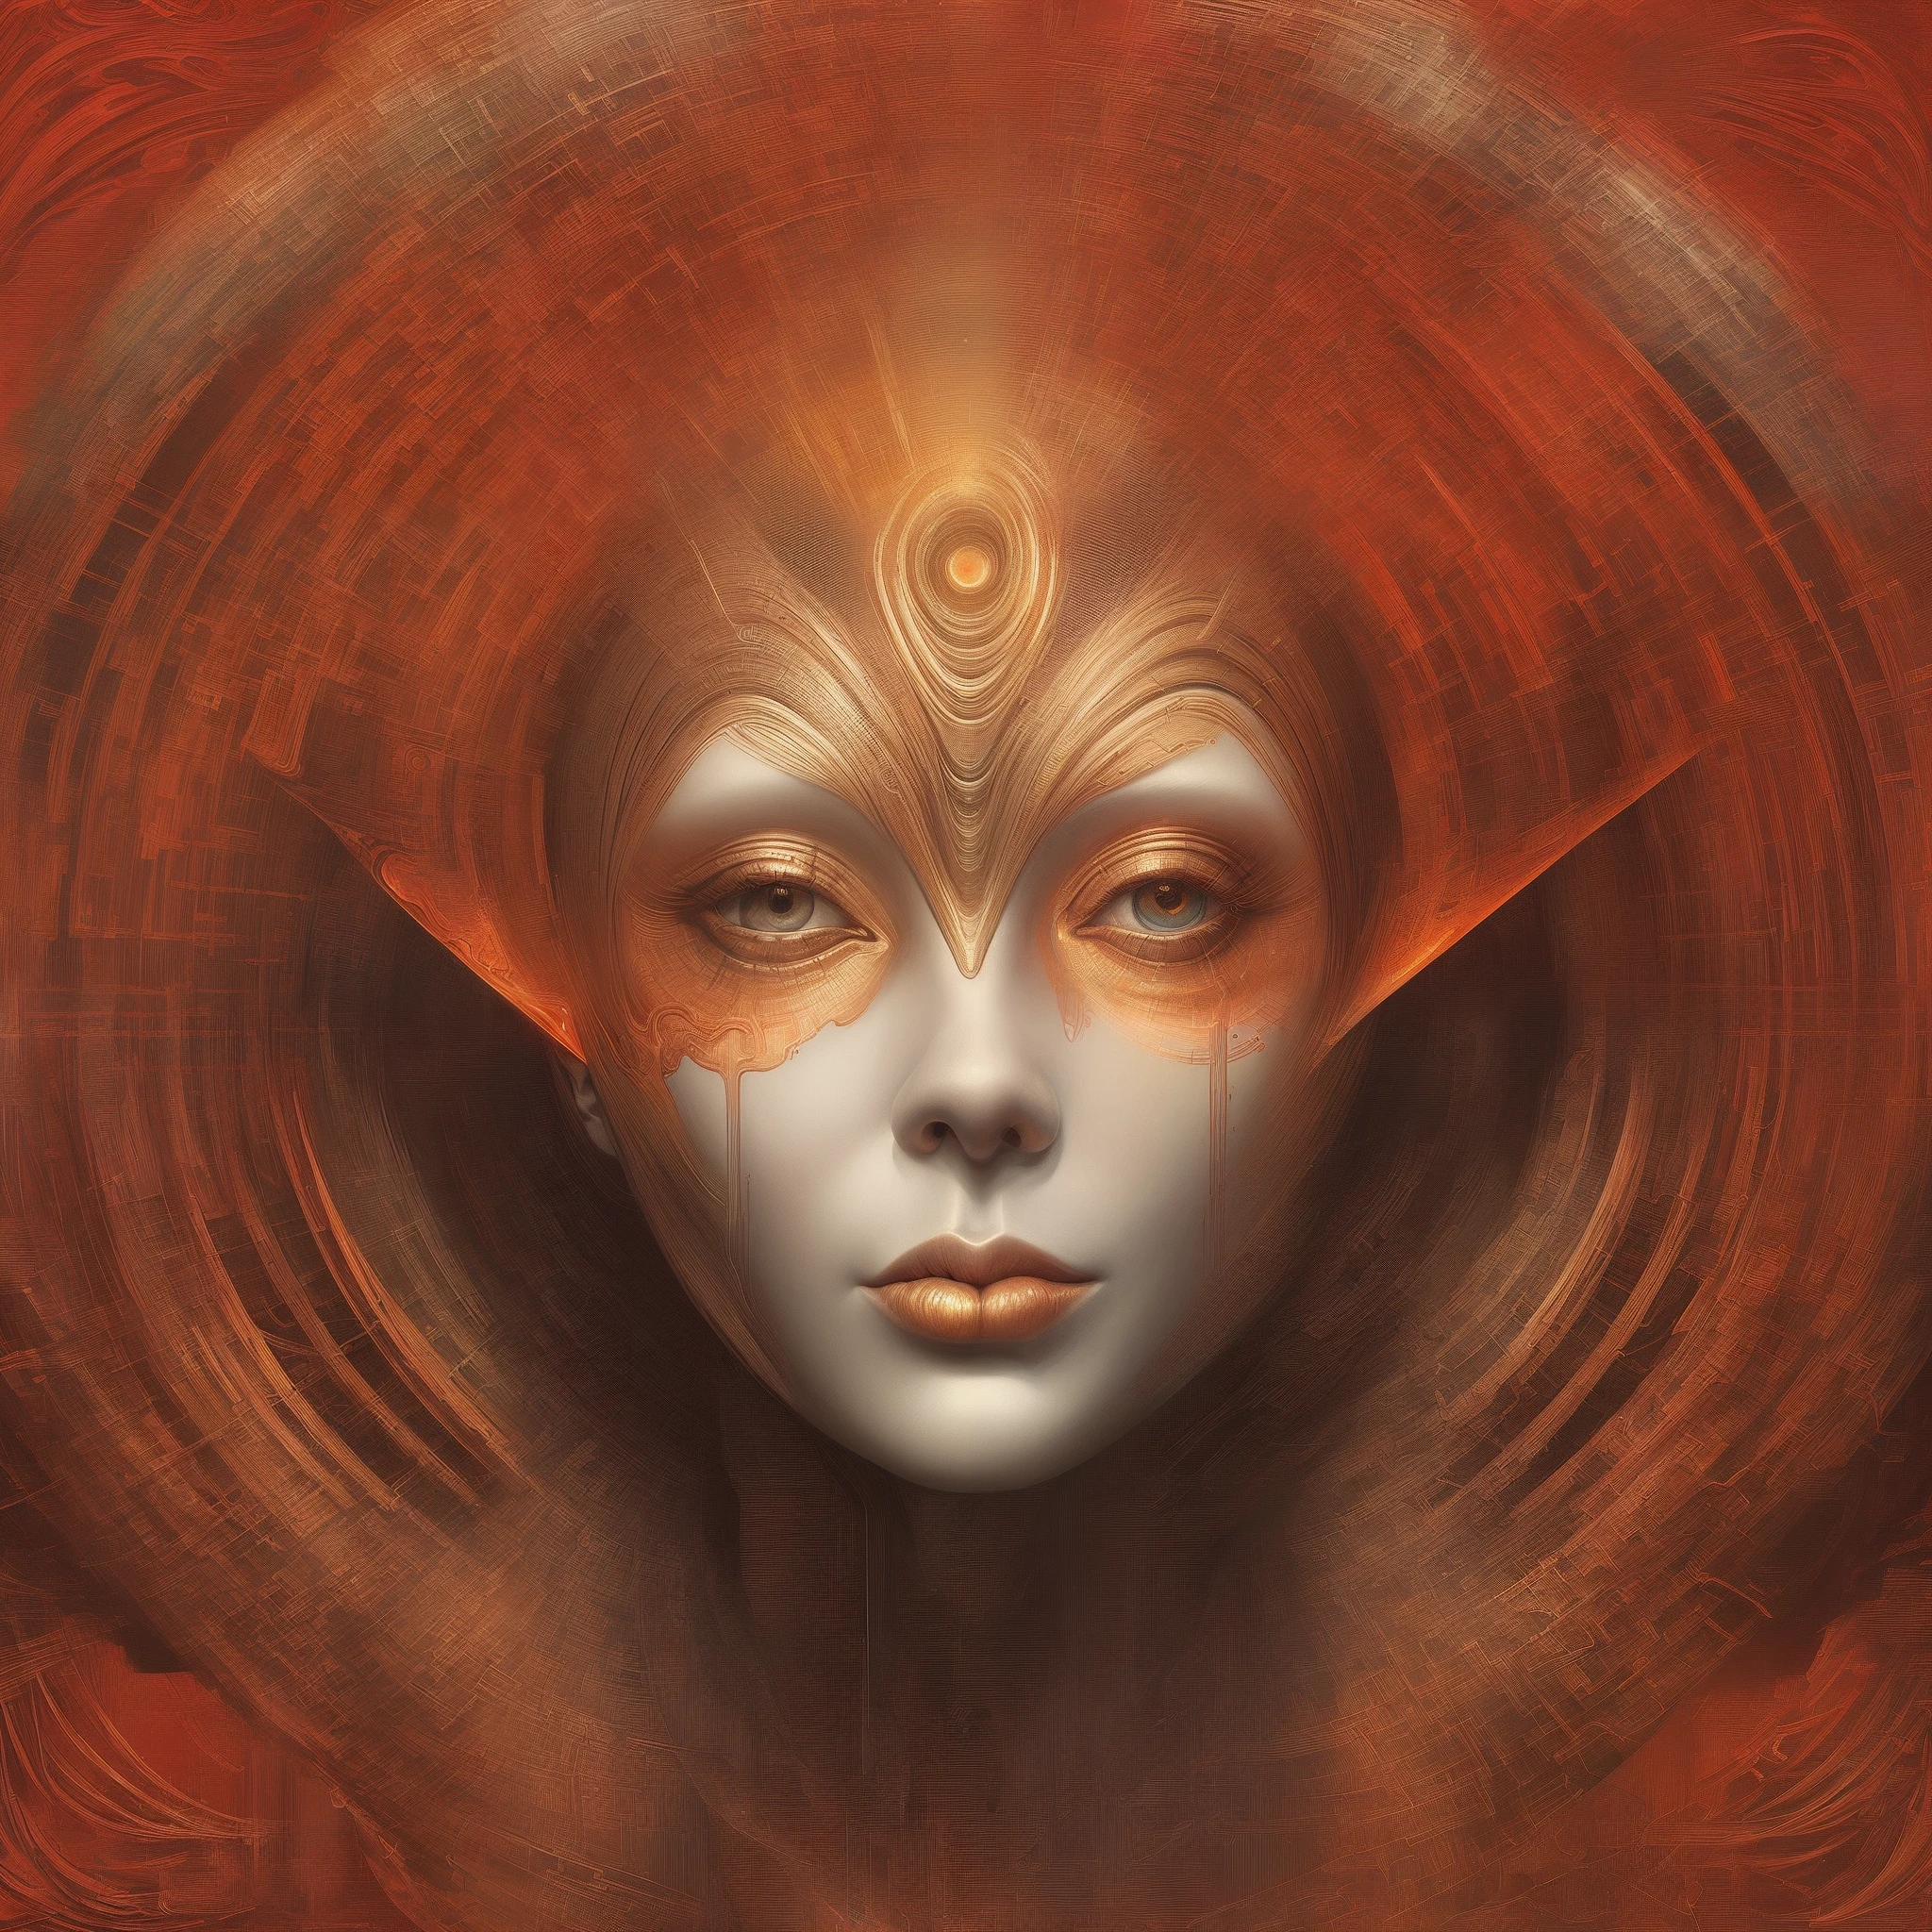 Es gibt ein digitales Gemälde einer Frau mit rotem Hintergrund, Digitale visionäre Kunst, Porträt einer weiblichen Humanoiden, Sci-Fi-Gesicht, Sci-Fi-Gesicht, Fraktales Gesicht, Attraktives Sci-Fi-Gesicht, 3-D-Porträt der Göttin, Symmetrisches Portrait SciFi, Futuristisches Porträt einer Frau, Porträt eines metallischen Gesichts, Inspiriert von Tomasz Alen Kopera